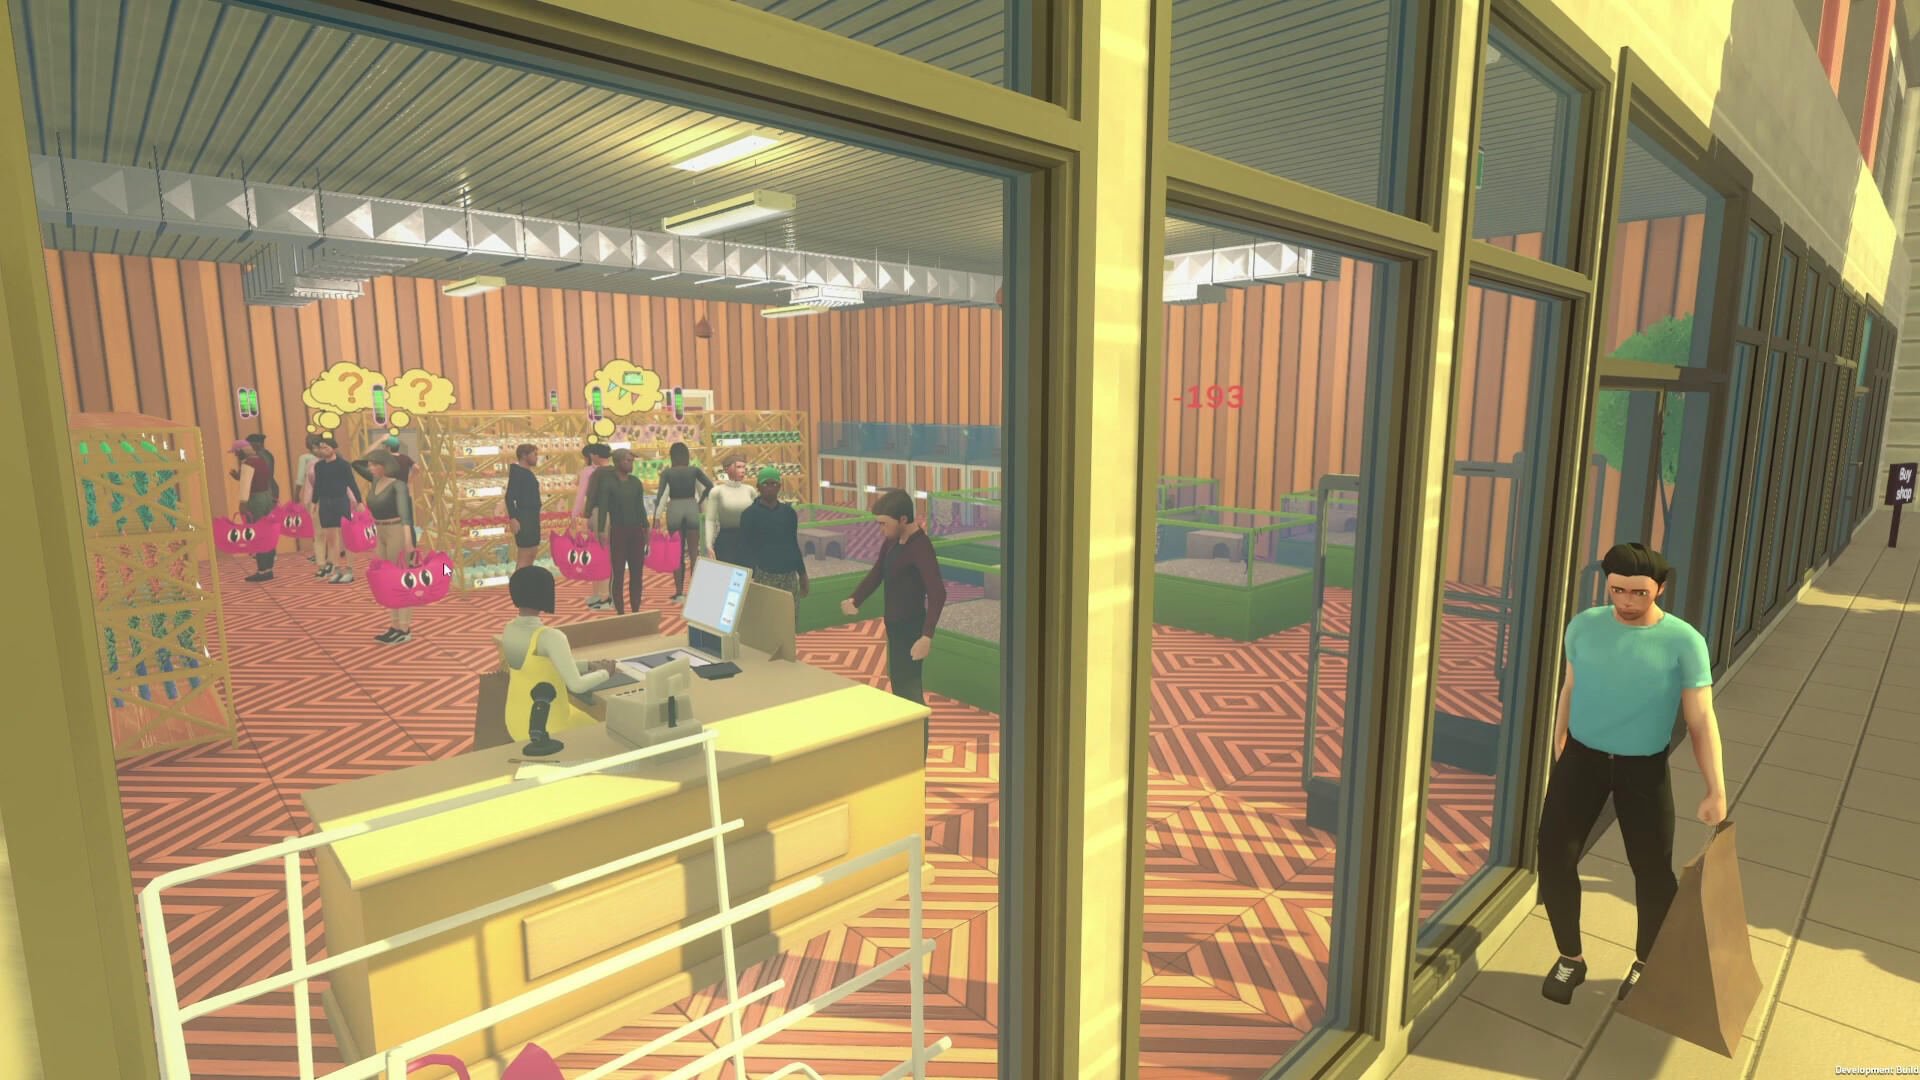 Screenshot of Pet Shop Simulator